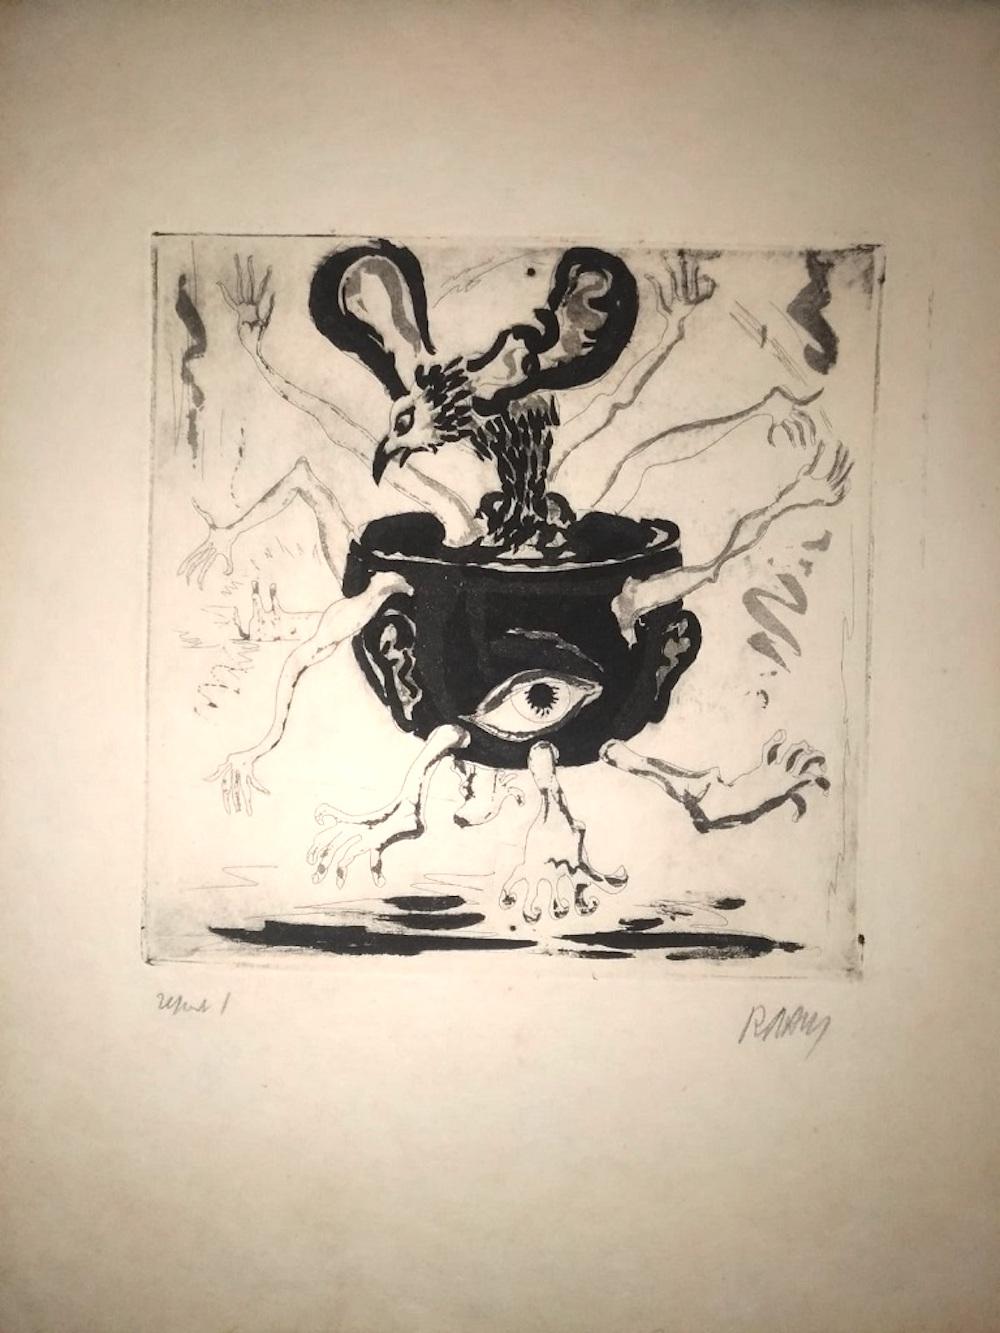 Le pot humain - eau-forte originale de R. Naly - 1955